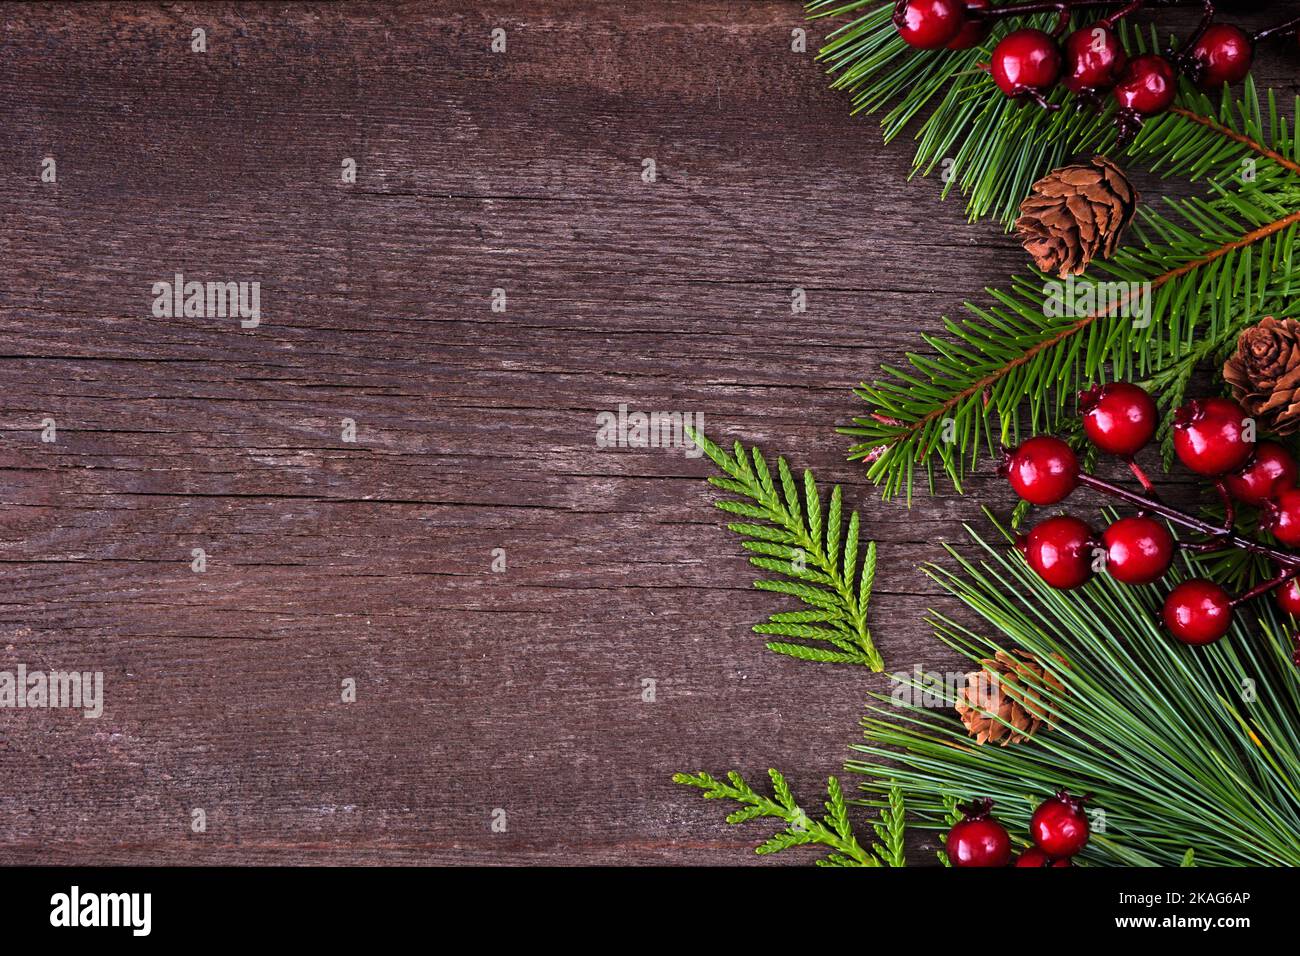 Bordure latérale de Noël avec branches à feuilles persistantes, baies rouges et cônes de pin. Vue en hauteur sur un arrière-plan en bois sombre avec espace de copie. Banque D'Images